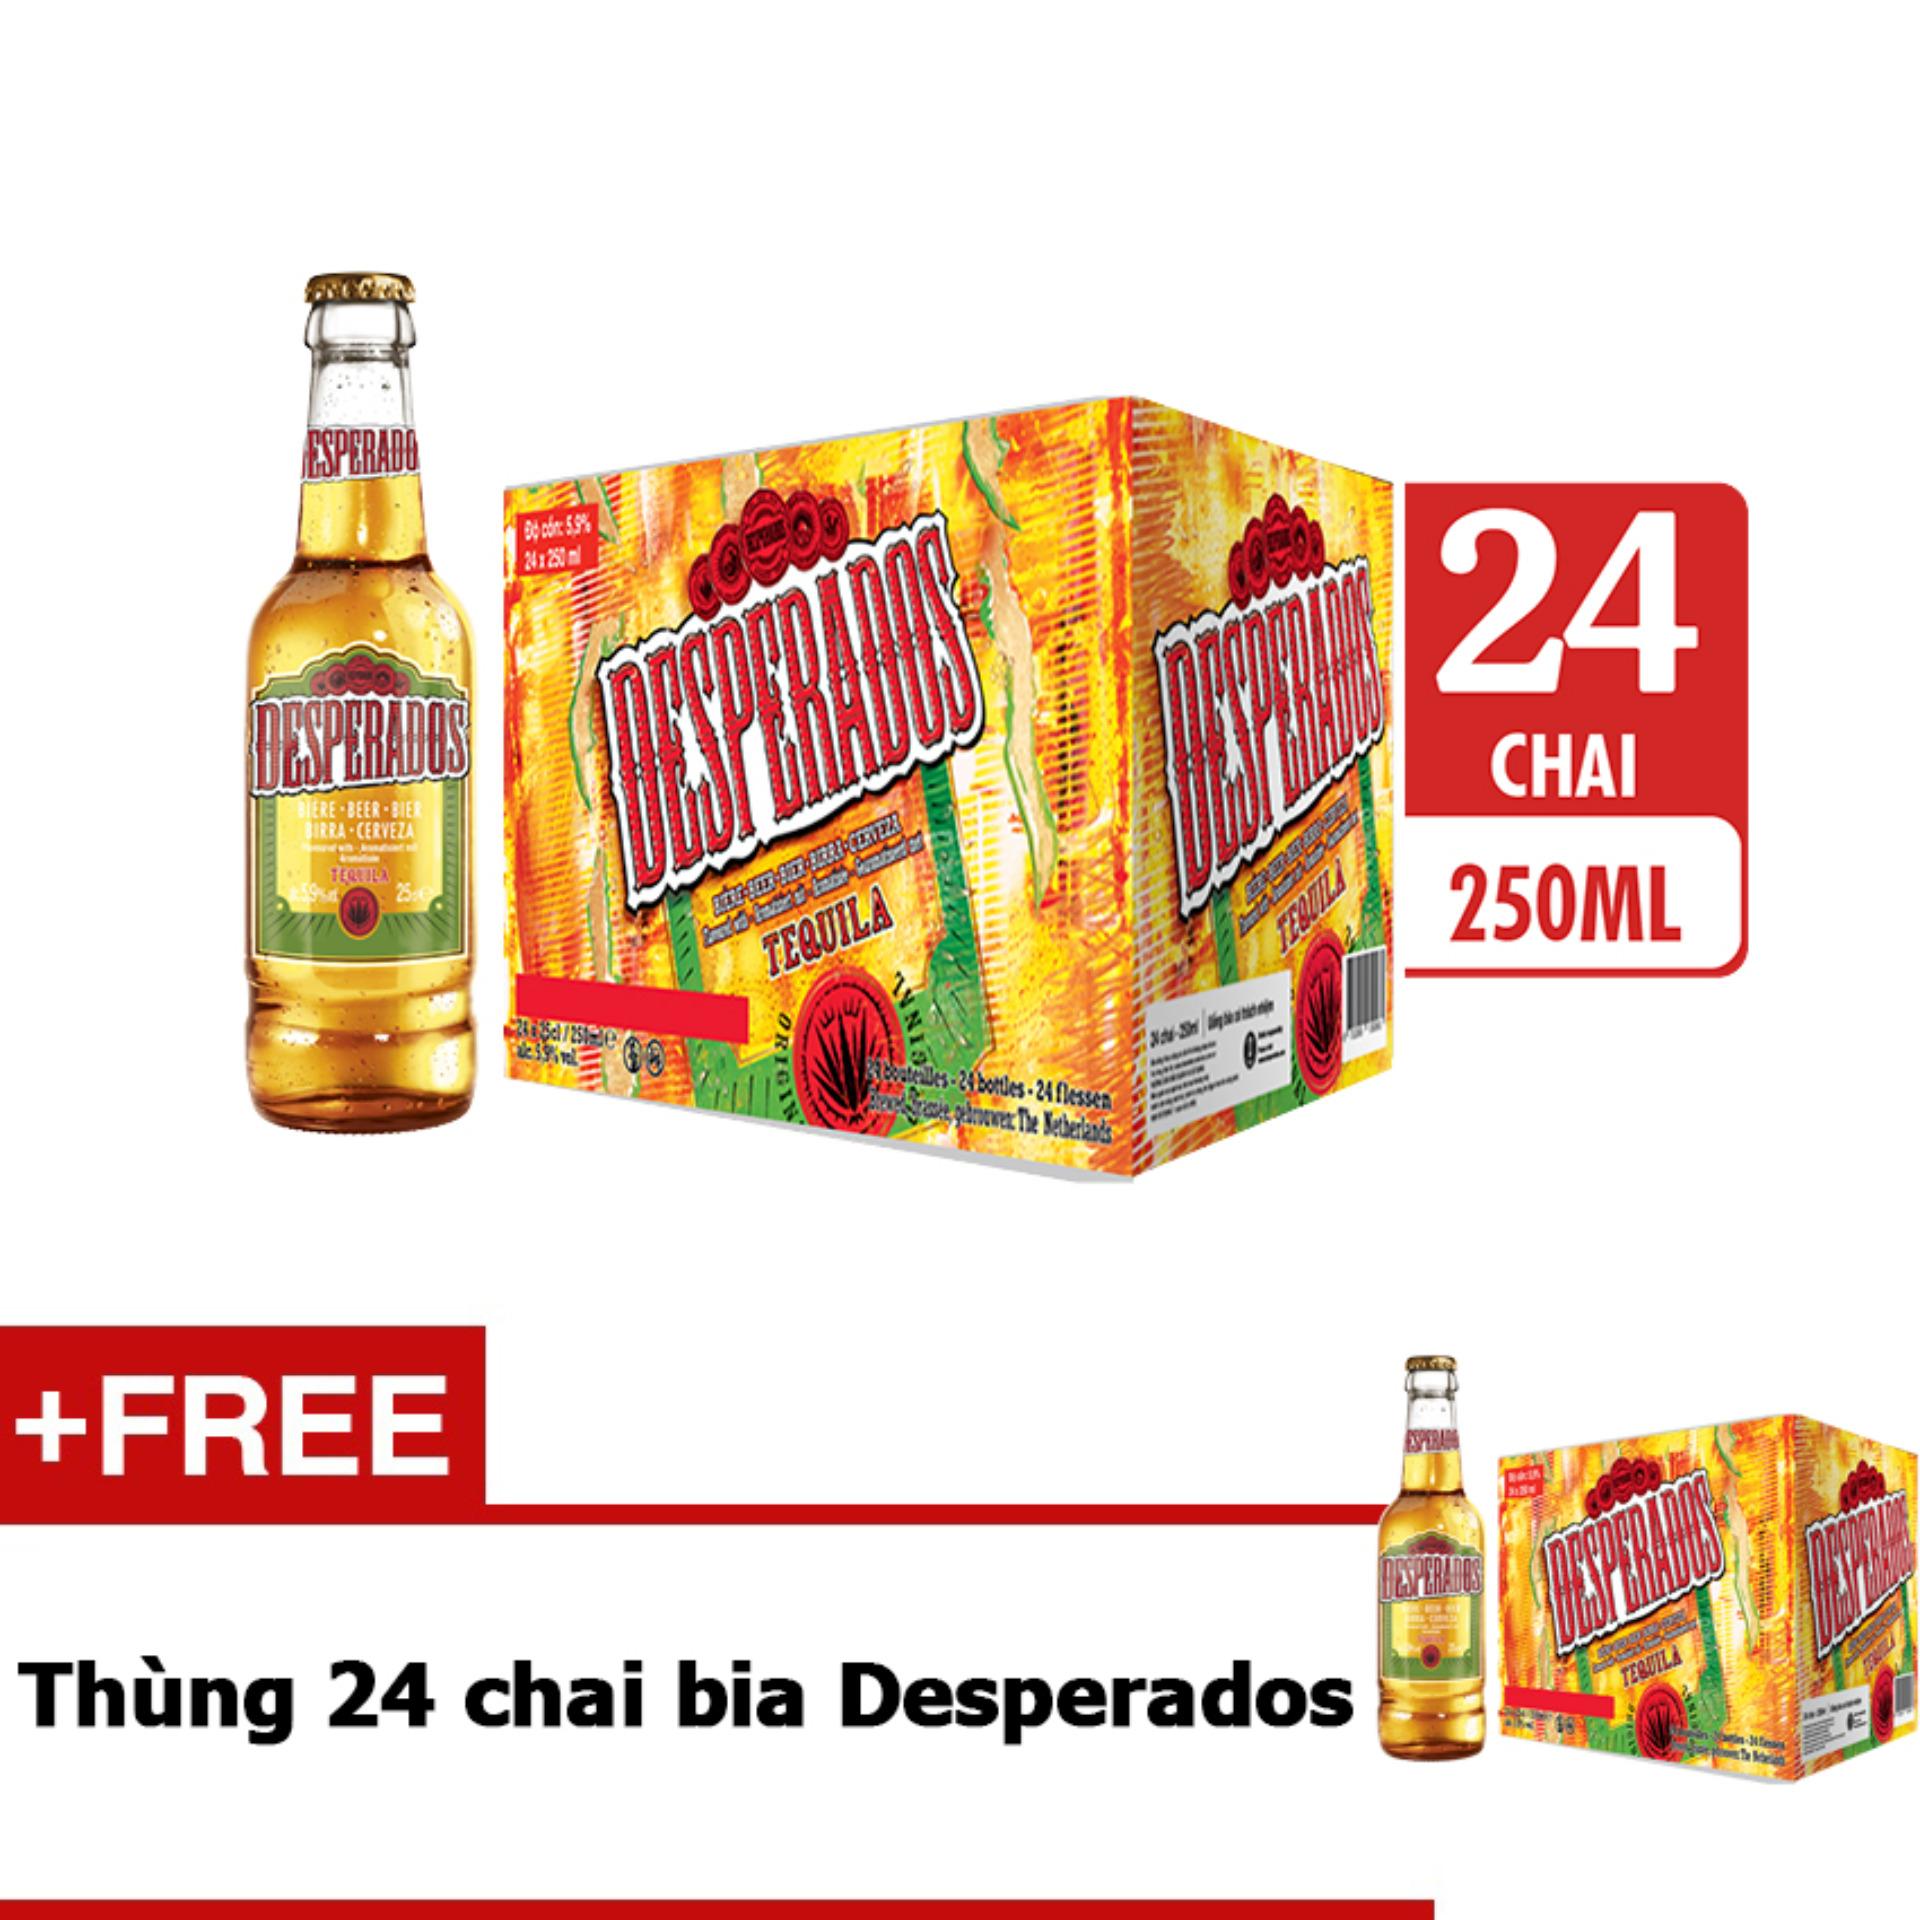 Thùng 24 chai bia Desperados hương vị Tequila 250ml tặng thùng 24 chai bia Desperados